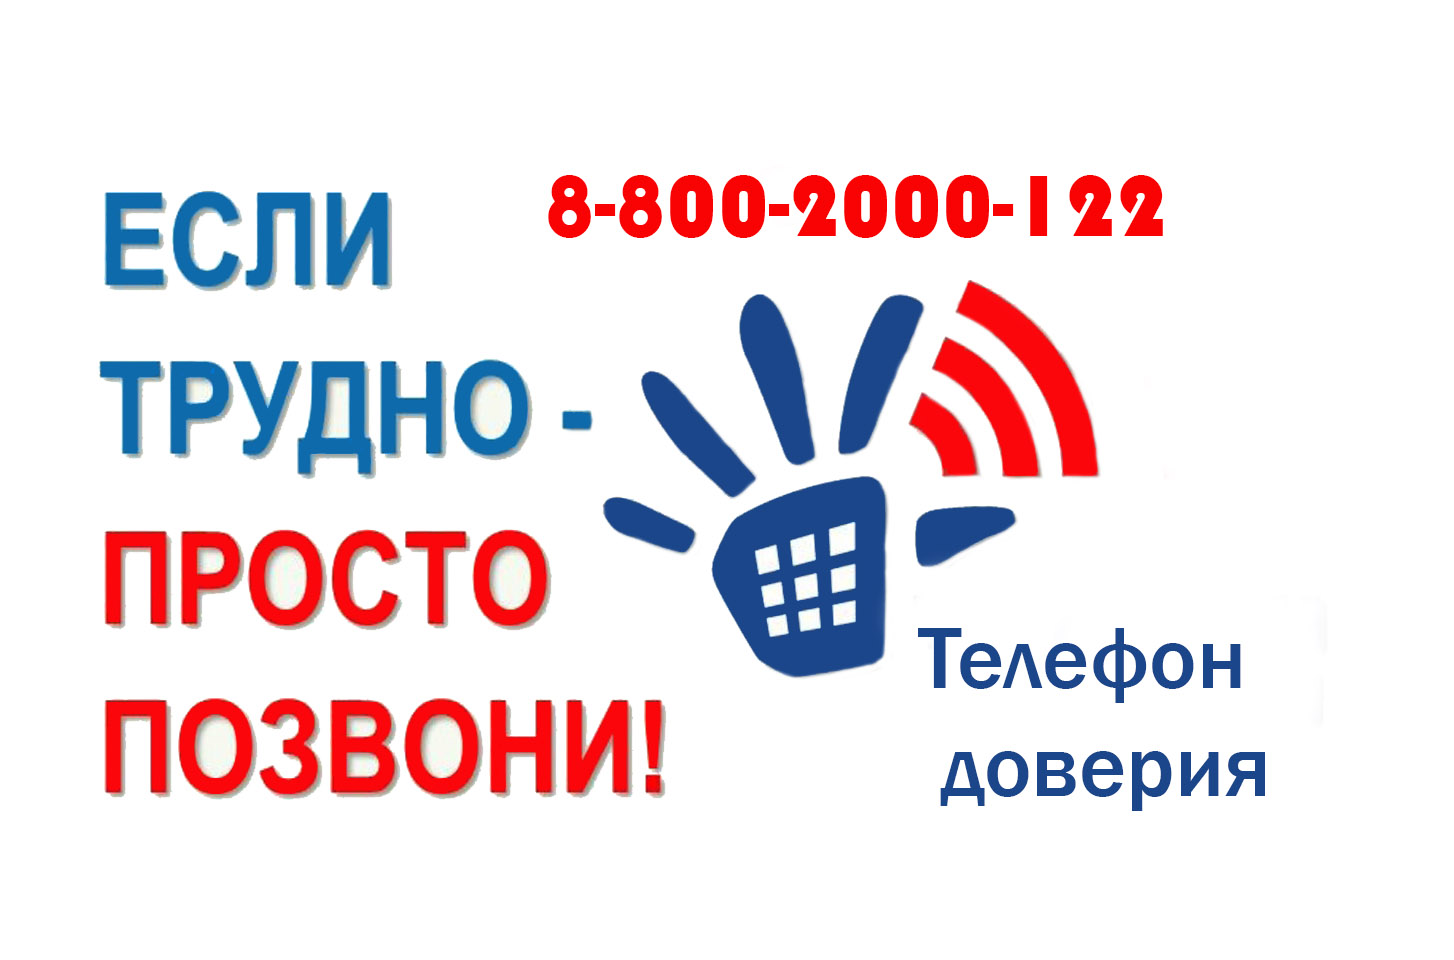 Телефоны доверия в России